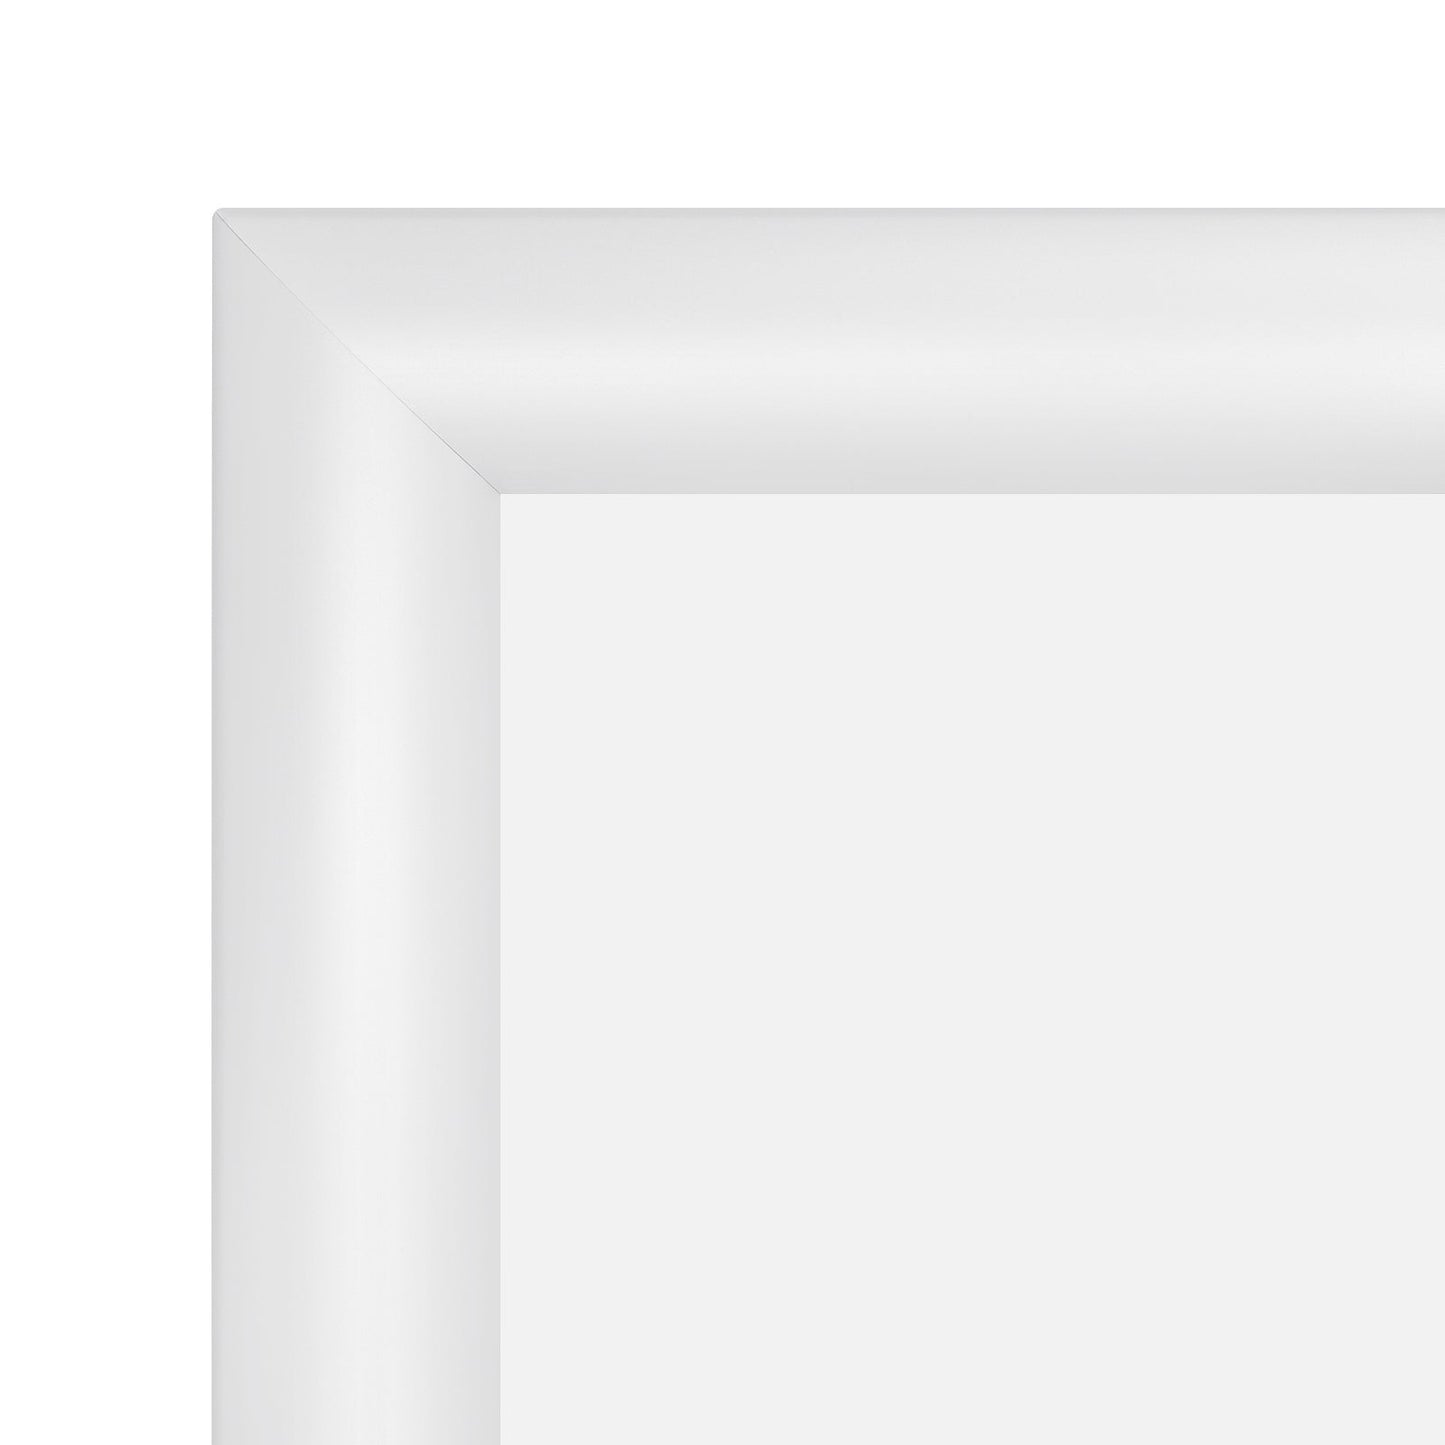 17x21 White SnapeZo® Snap Frame - 1.2" Profile